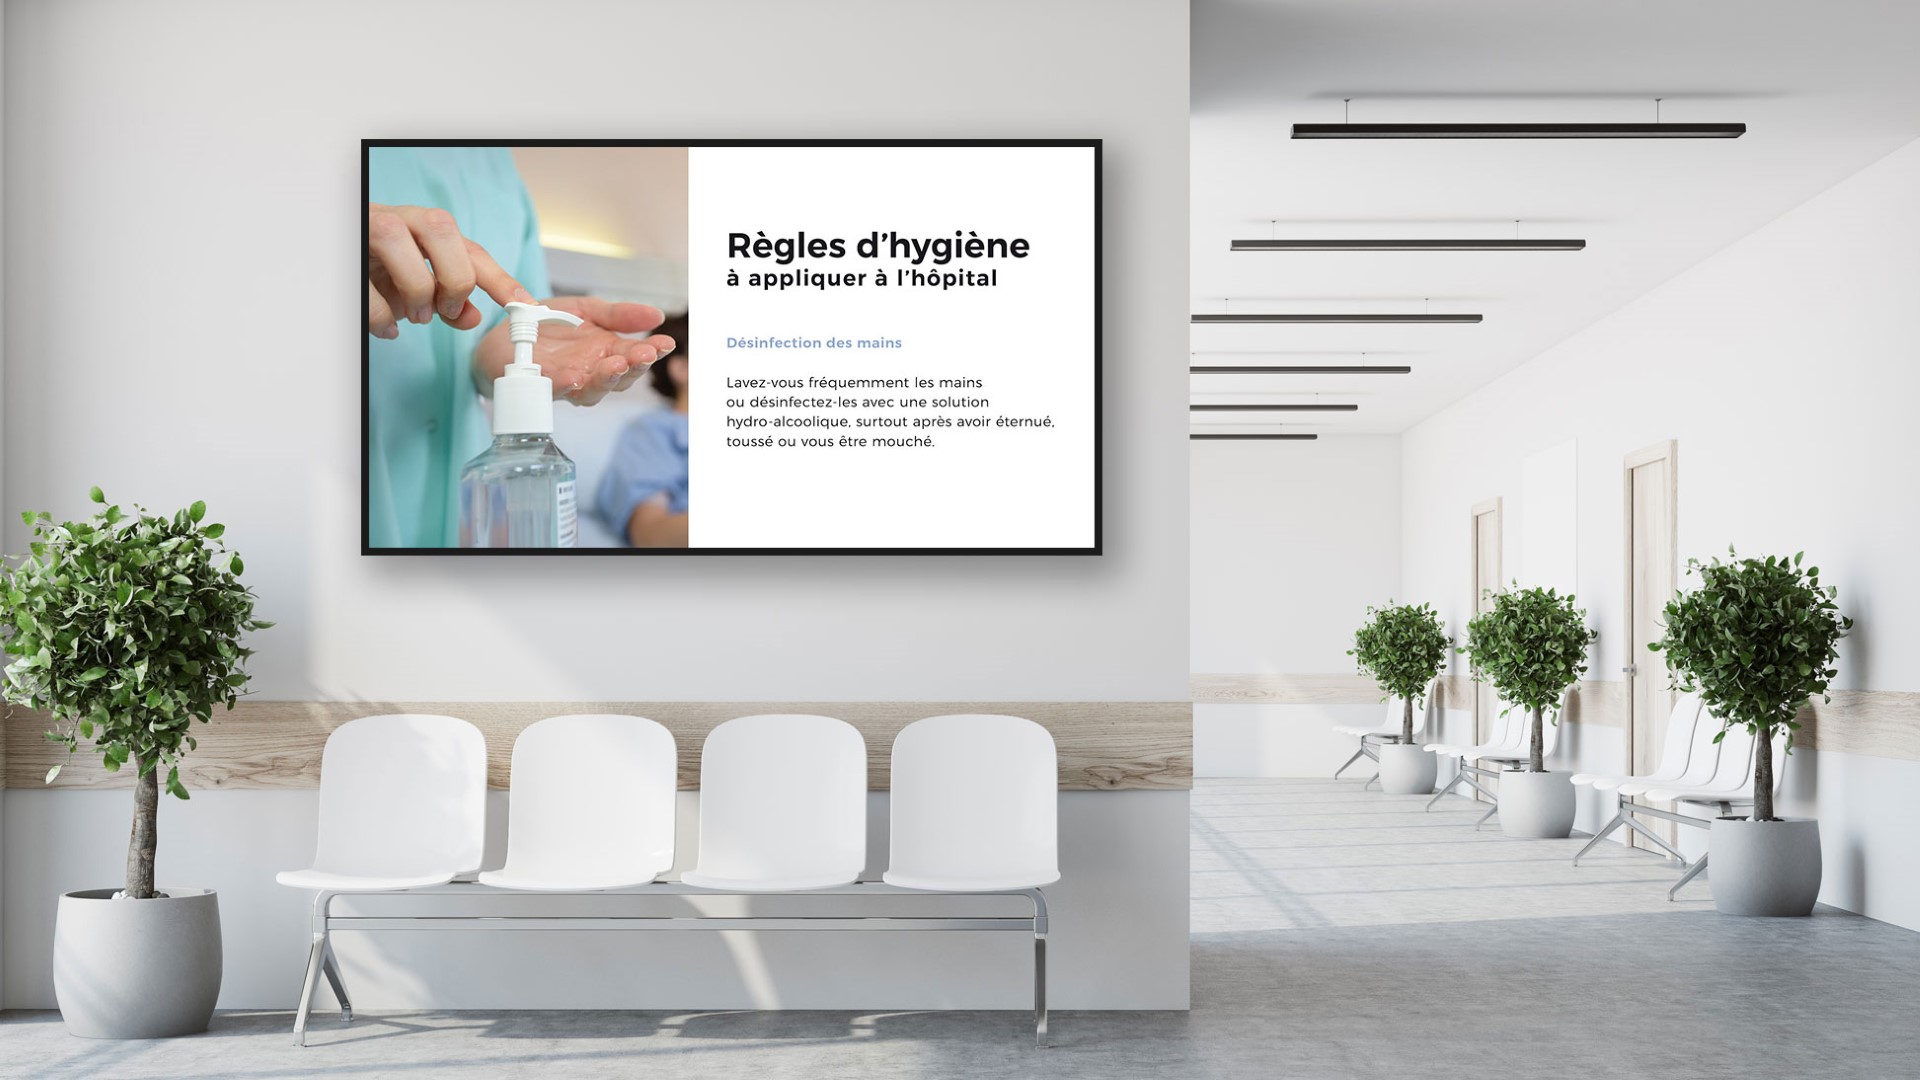 Image d'exemple d'un écran dynamique pour les centre médicaux, hopitaux ou cliniques